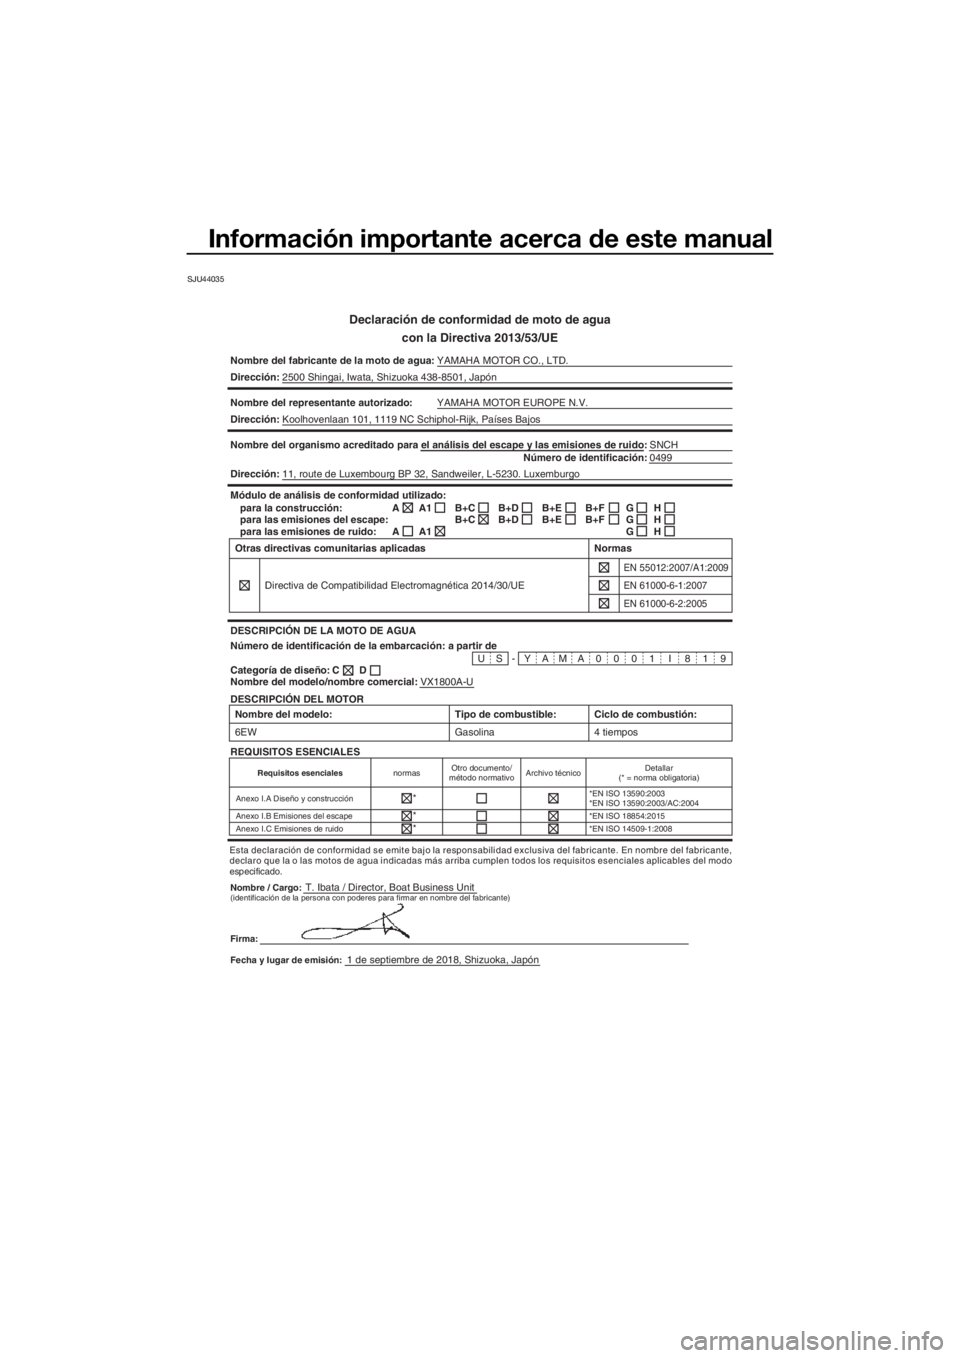 YAMAHA VXR 2019  Manuale de Empleo (in Spanish) Información importante acerca de este manual
SJU44035
Declaración de conformidad de moto de agua
con la Directiva 2013/53/UE
Nombre del fabricante de la moto de agua:YAMAHA MOTOR CO., LTD.
Direcció